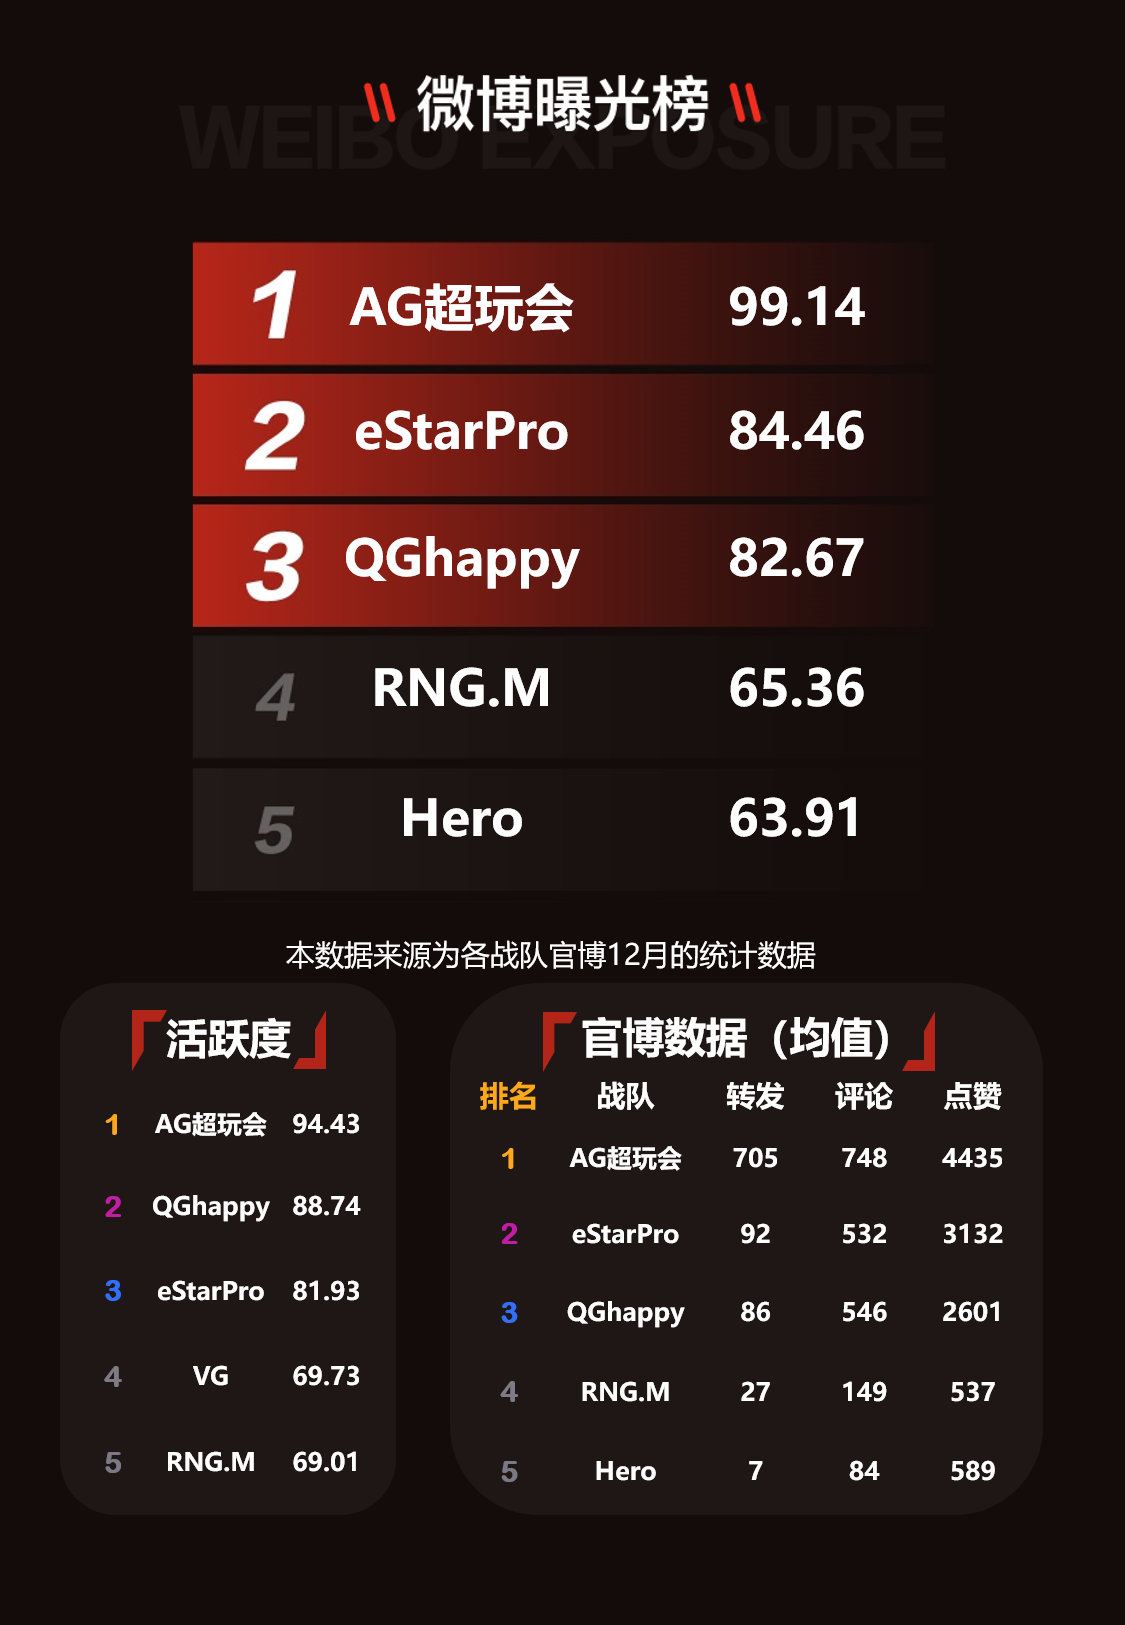 12月榜单 | 王者荣耀俱乐部影响力排行榜：eStarPro位居第一